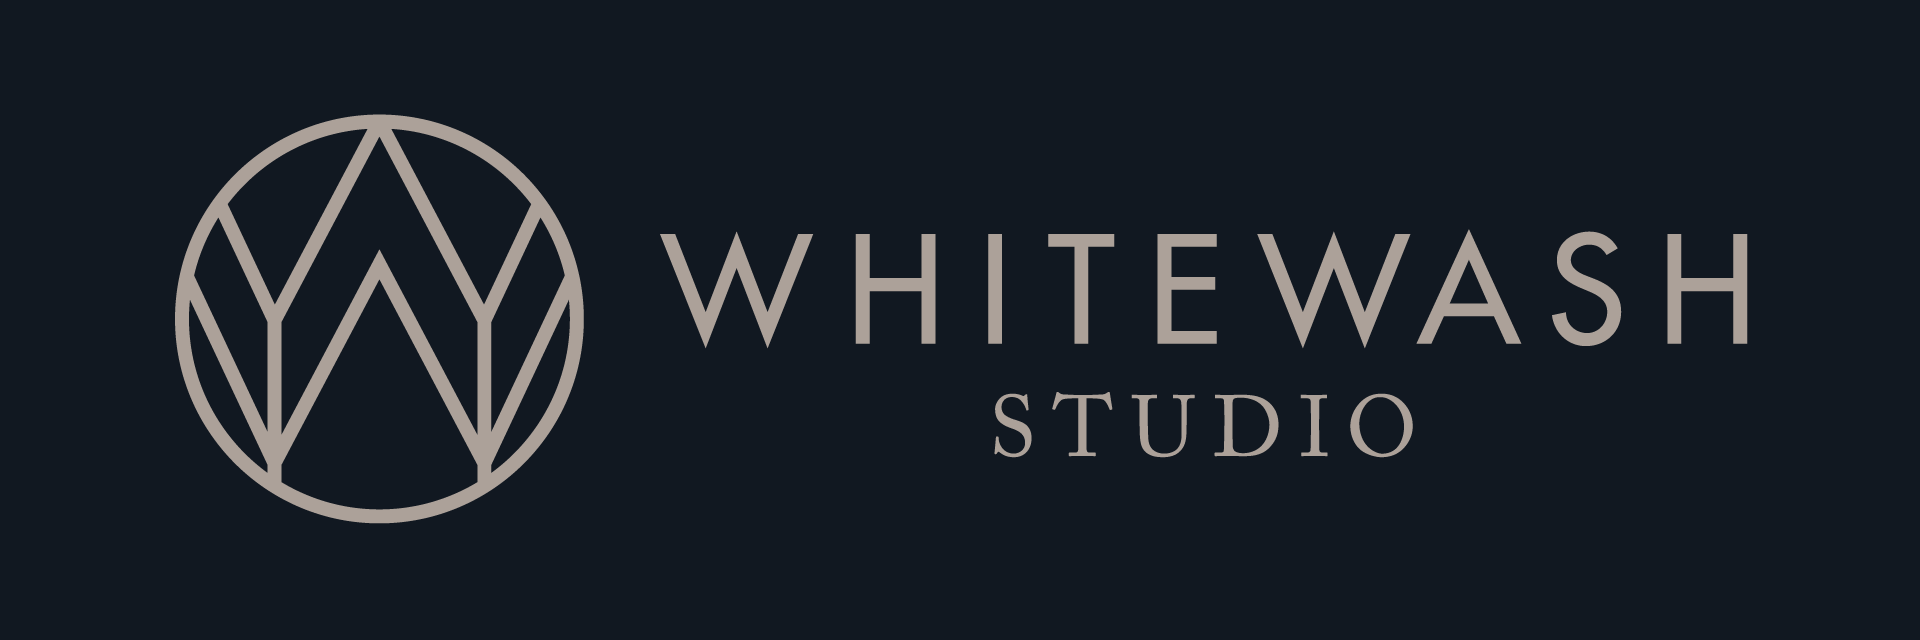 Whitewash Studio Horizontal Lockup